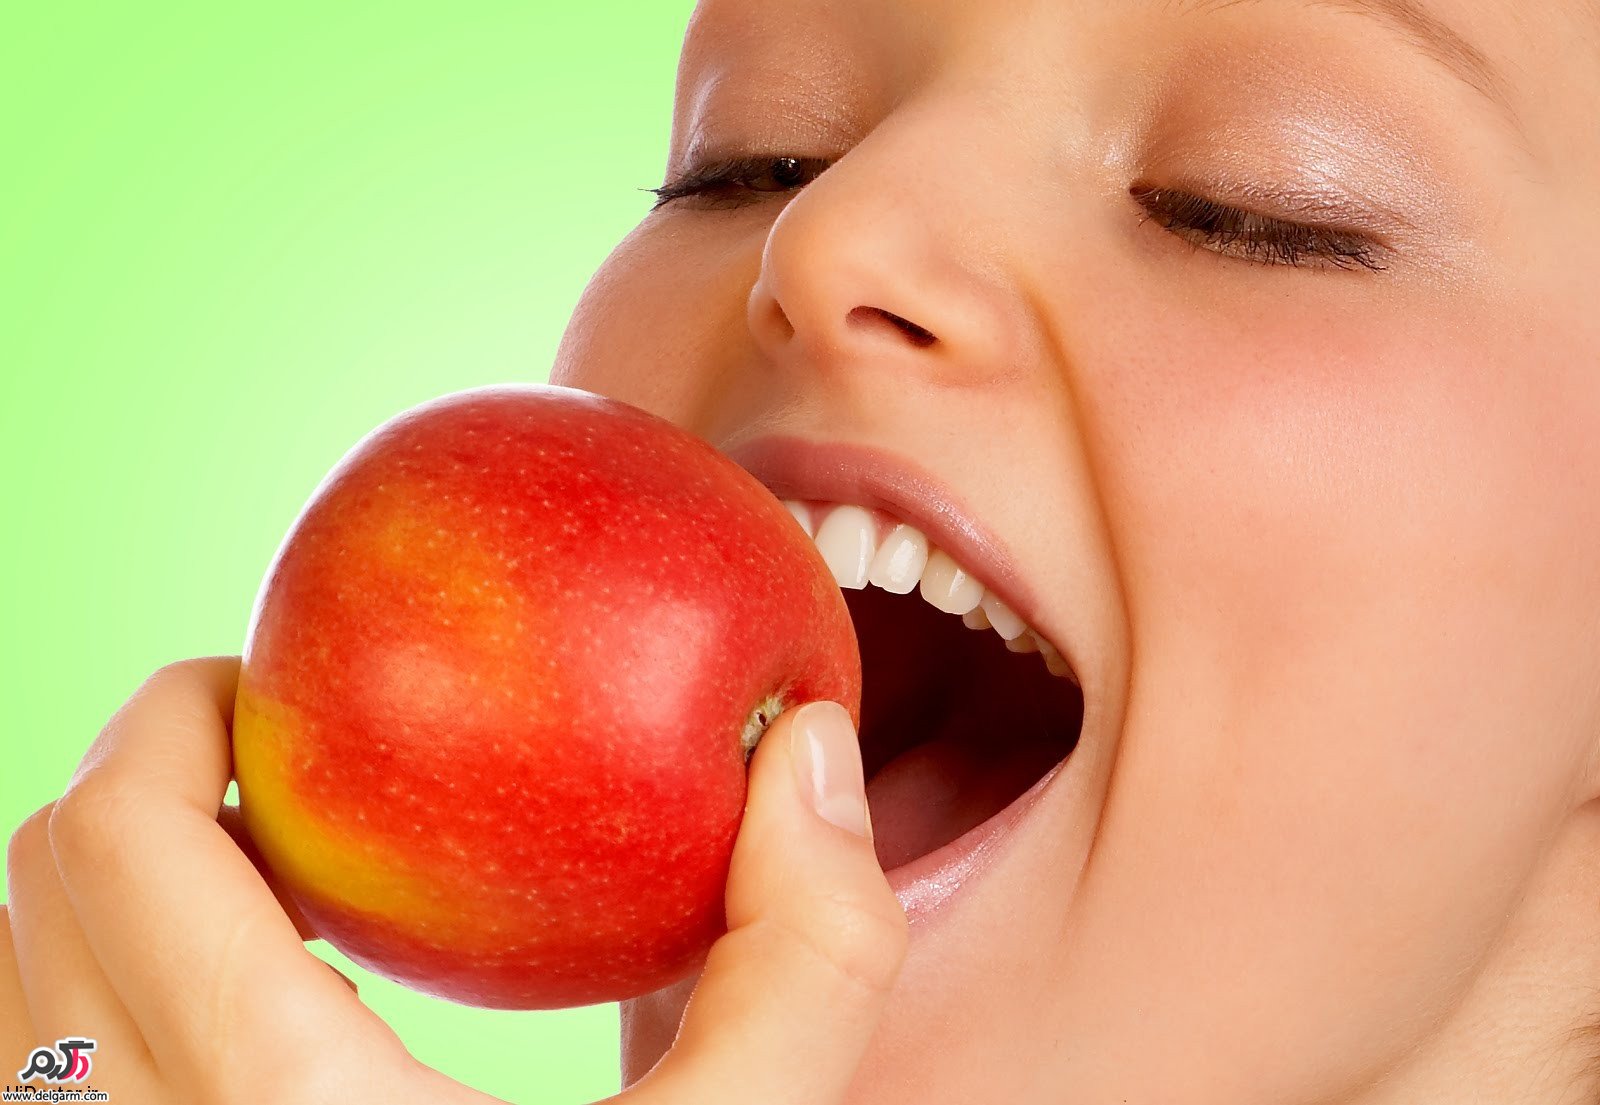 پاکسازی ارگانیسم با سیب یکبار در ماه